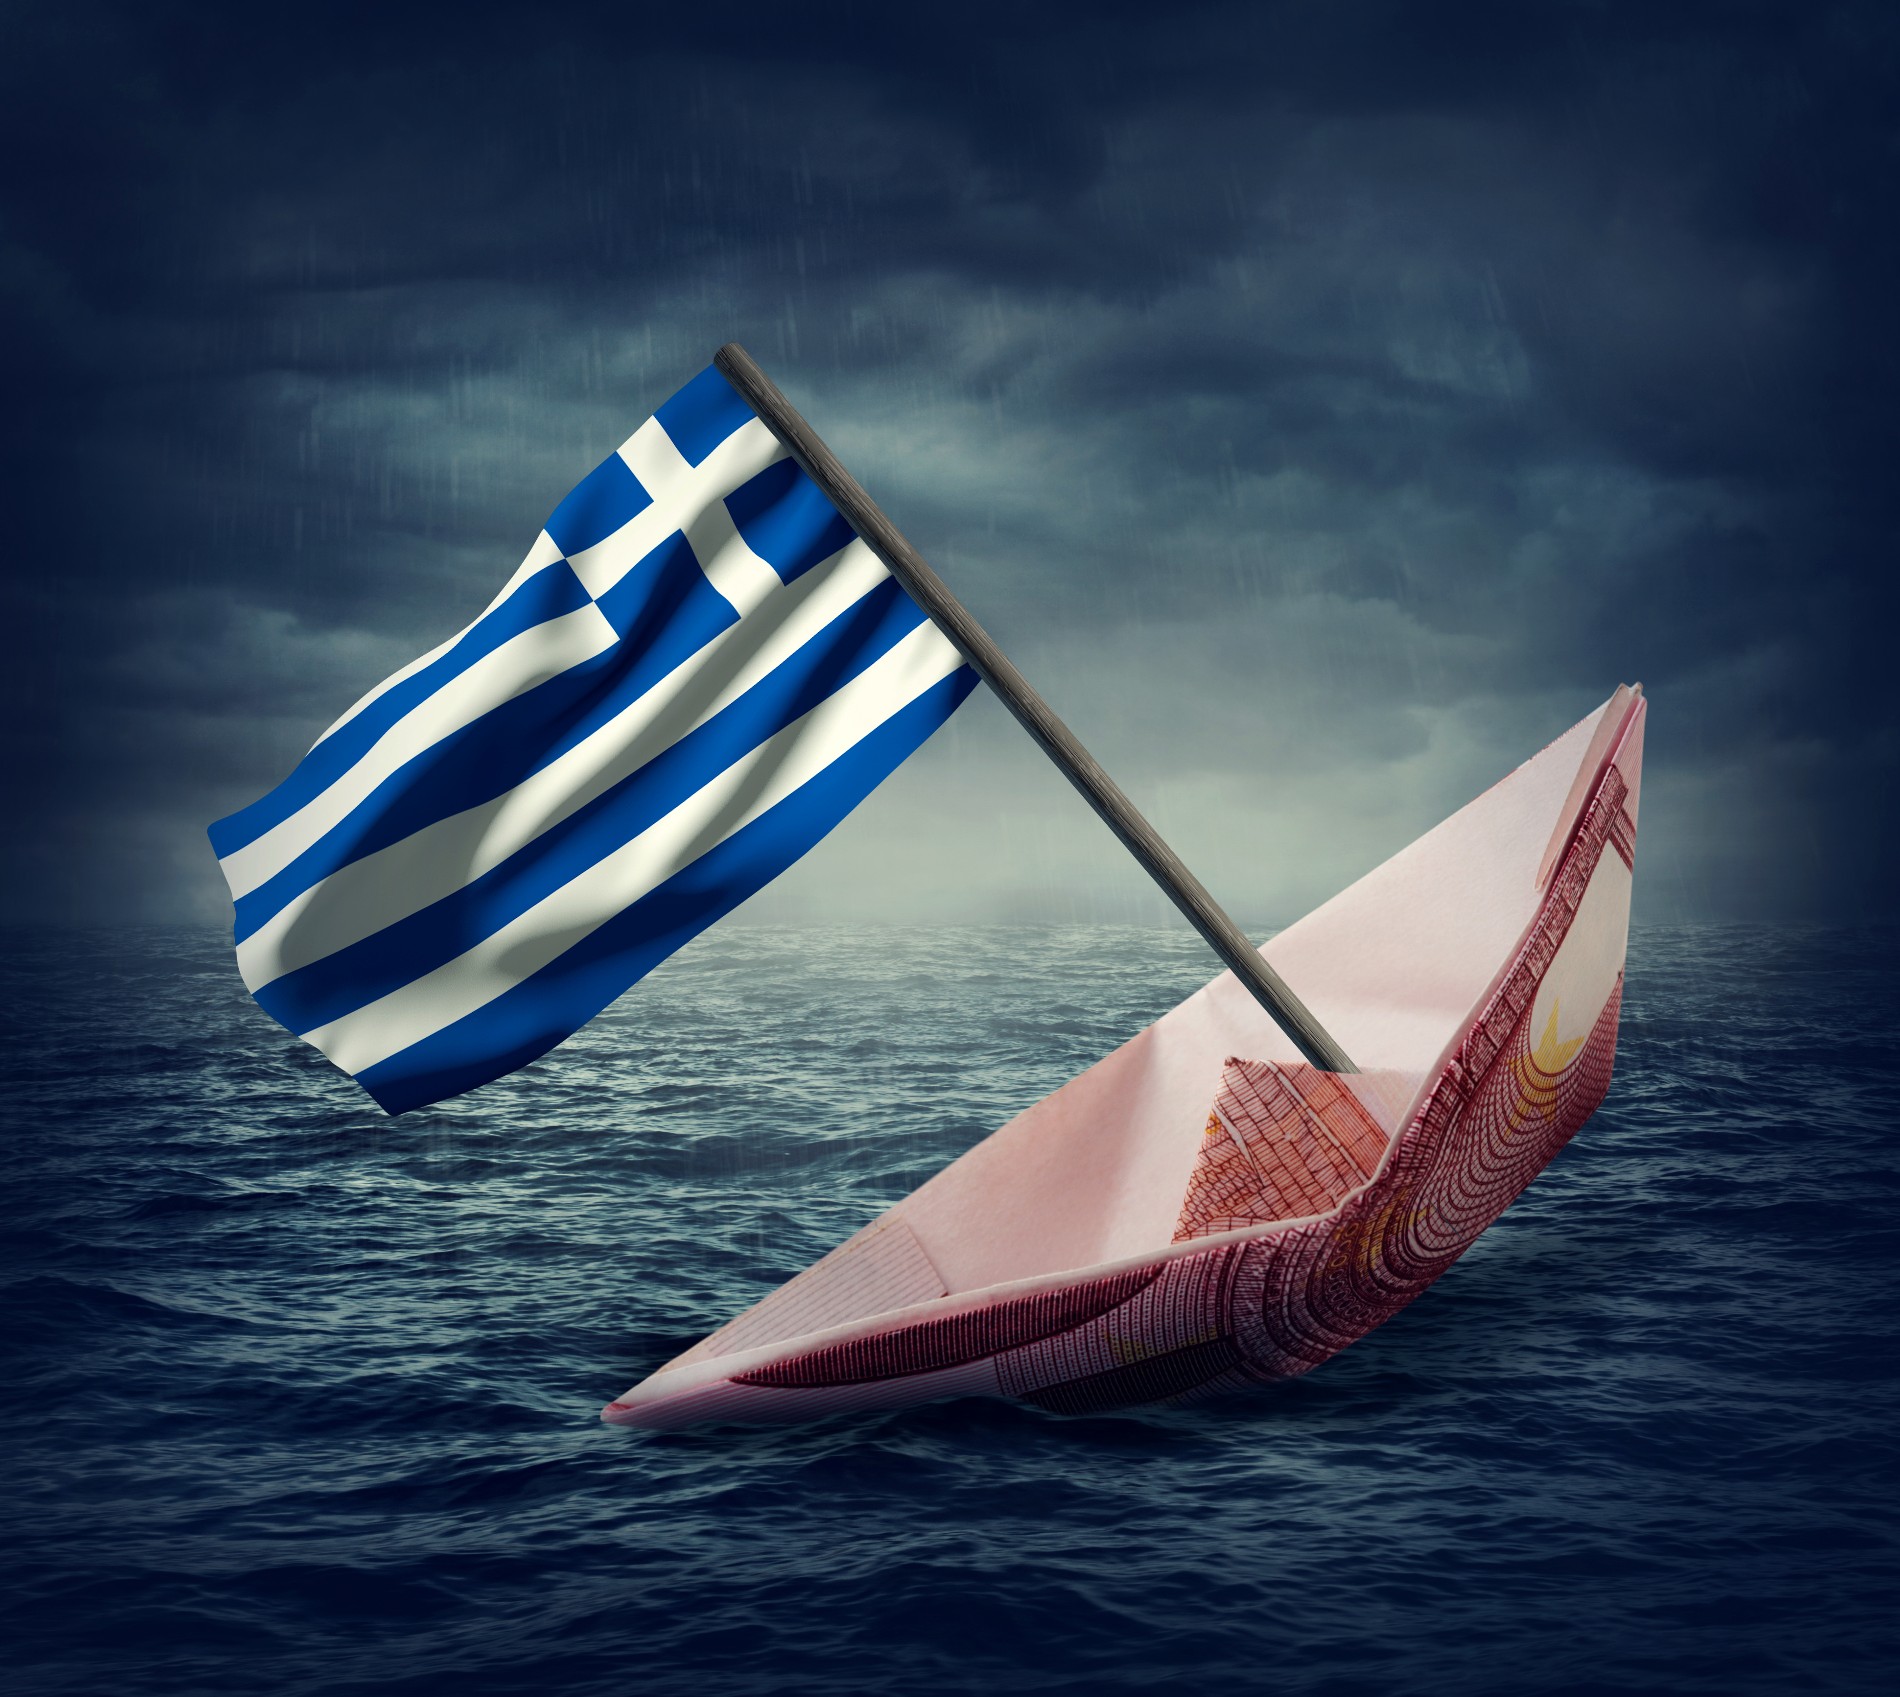 Η Ελλάδα θα αντέξει στο κλίμα που πάει να δημιουργηθεί; Τα «γκρίζα σύννεφα» σε Ενεργειακό, οικονομικό γεωπολιτικό επίπεδο, τα Ελληνοτουρκικά, η Μόσχα, η Κίνα, οι Αμερικάνοι και ο κίνδυνος σύρραξης στο Κόσοβο